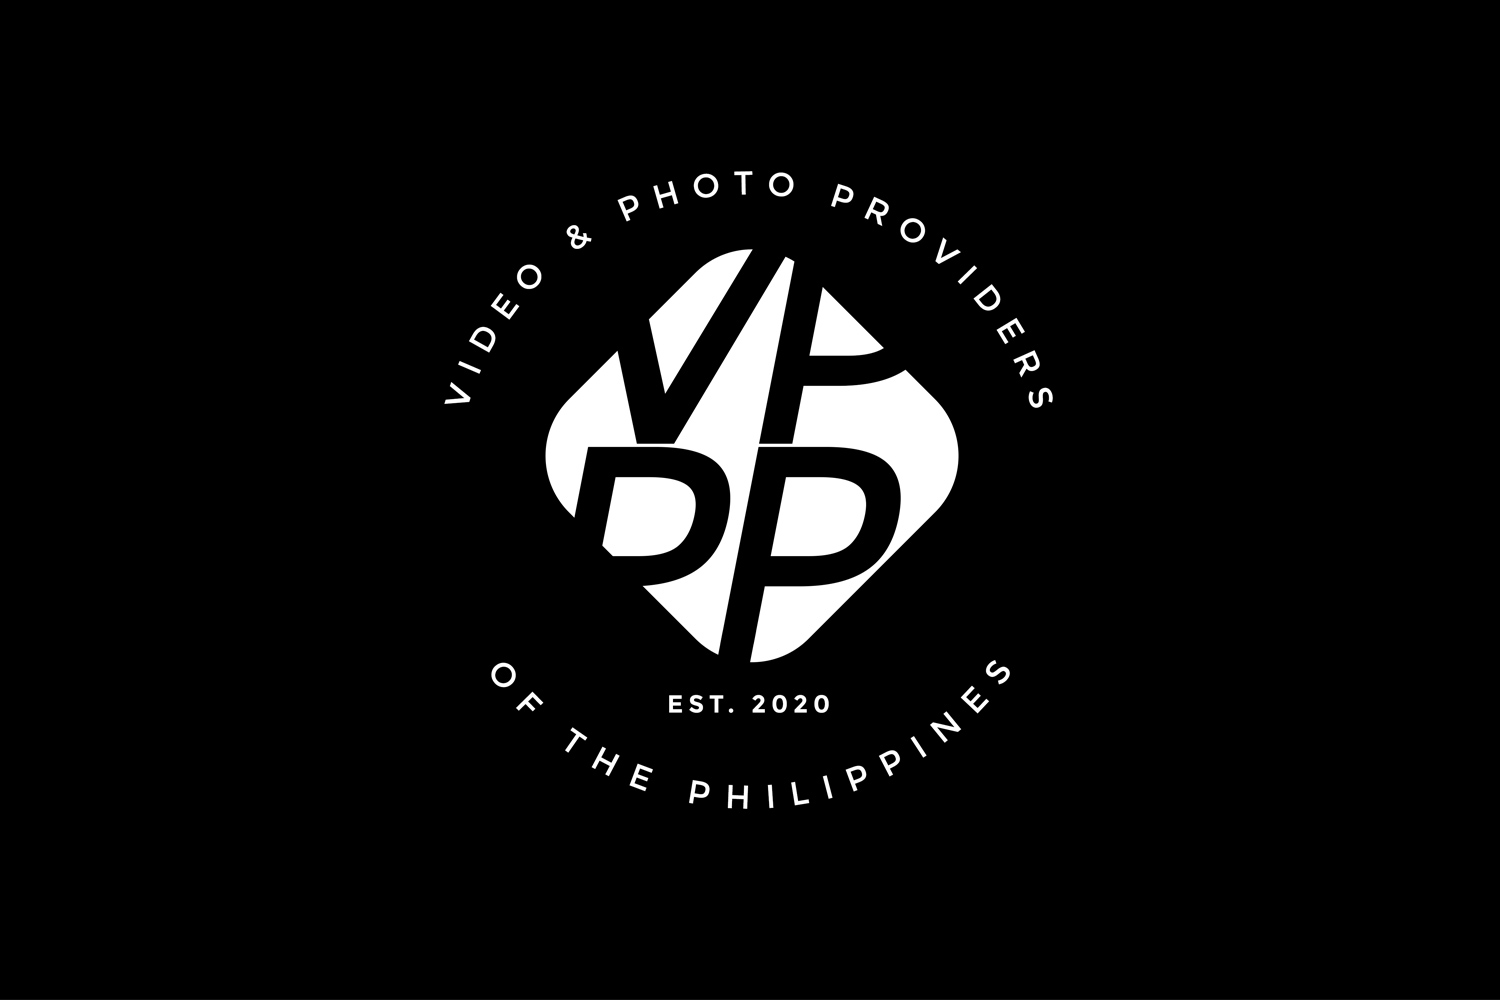 Fotografia VPPP Philippines News